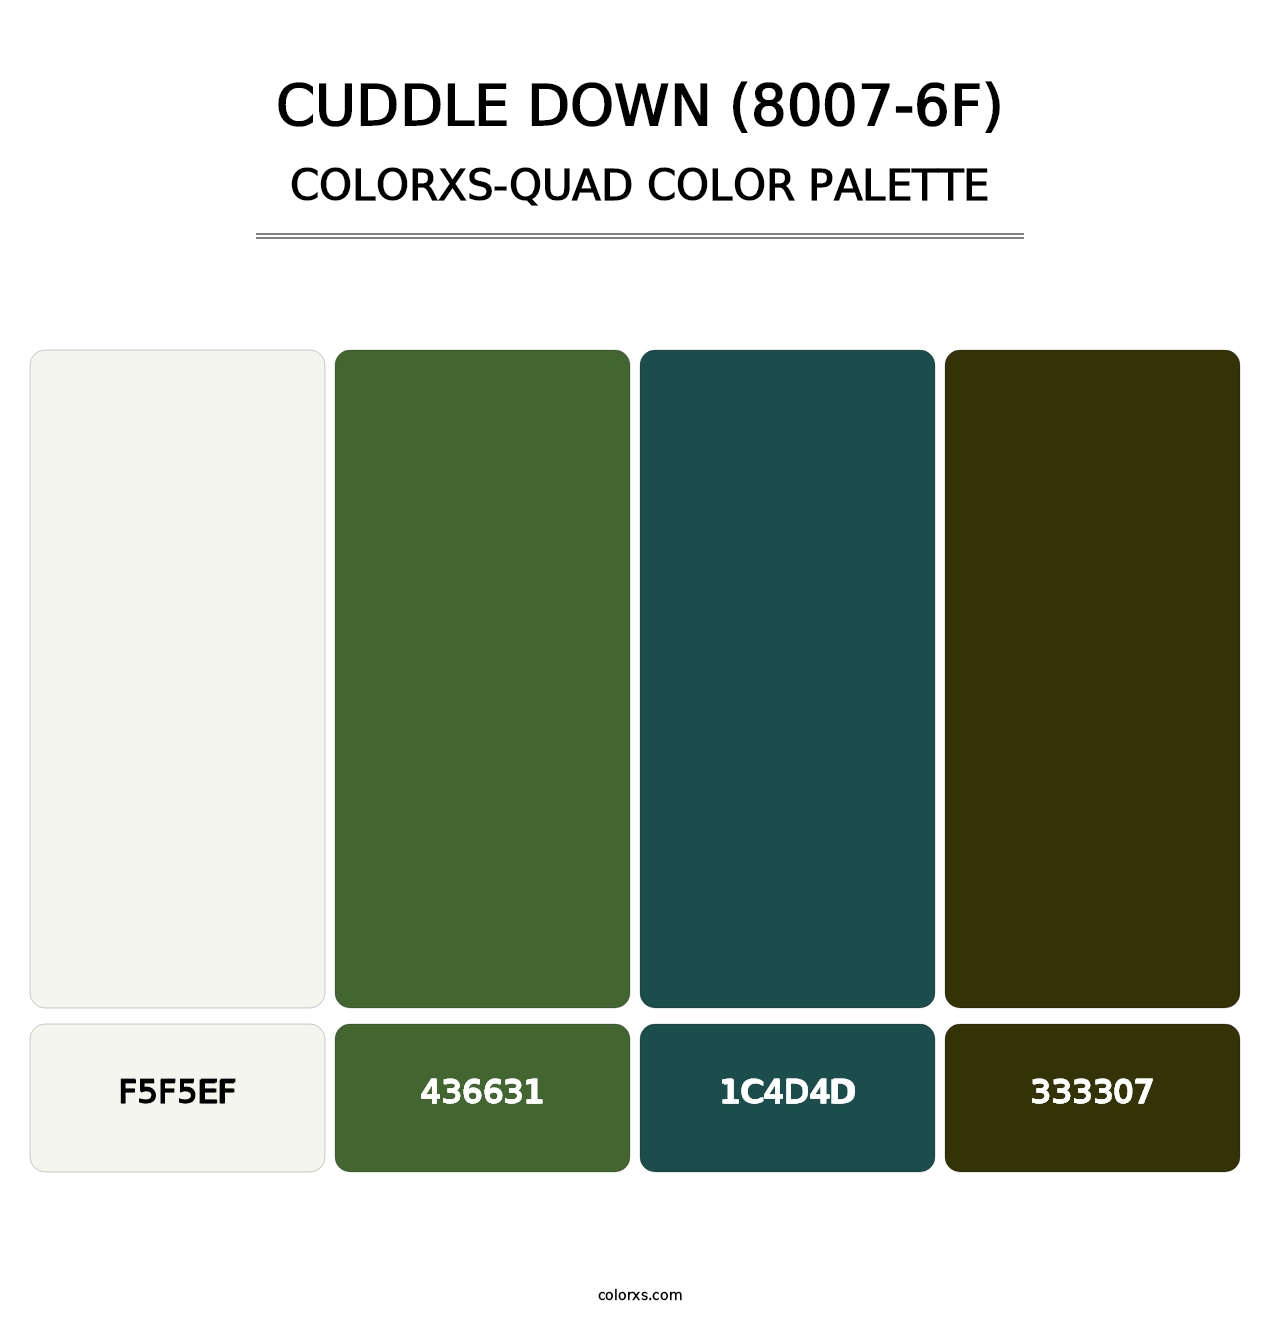 Cuddle Down (8007-6F) - Colorxs Quad Palette